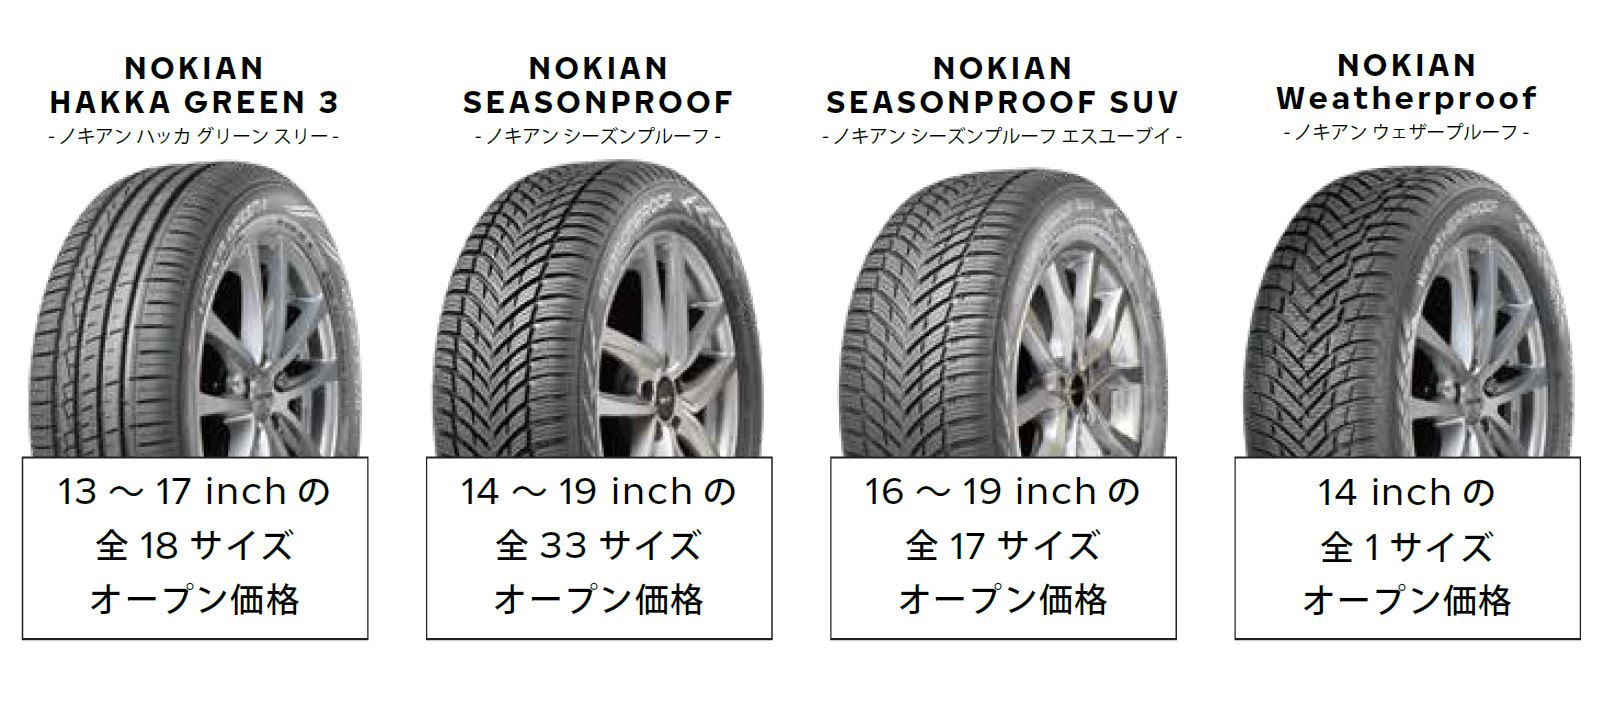 ノキアンタイヤ、新製品のオールシーズンタイヤ「NOKIAN SEASONPROOF」シリーズ発売 全51サイズ - Car Watch